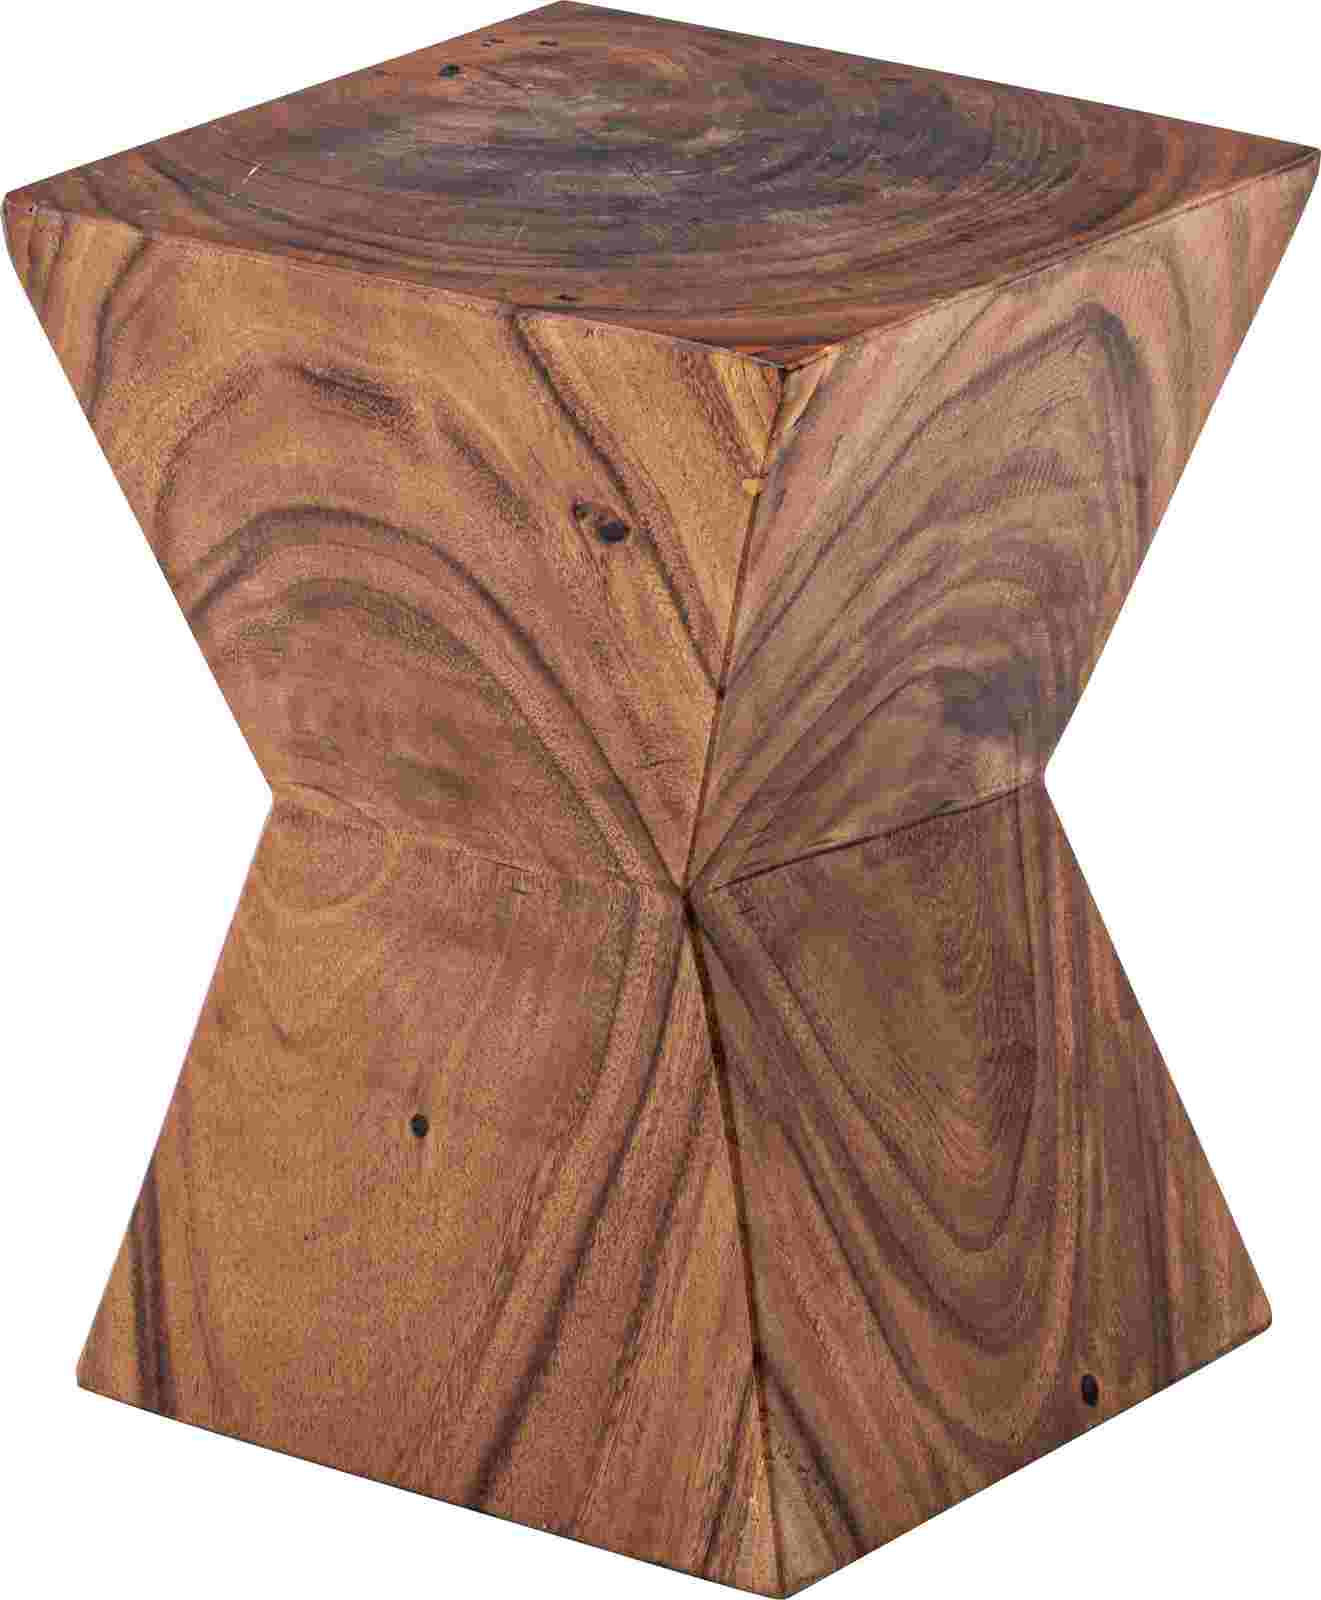 スツール 椅子 チェア ローチェア サイドテーブル 台形面 天然木 古材